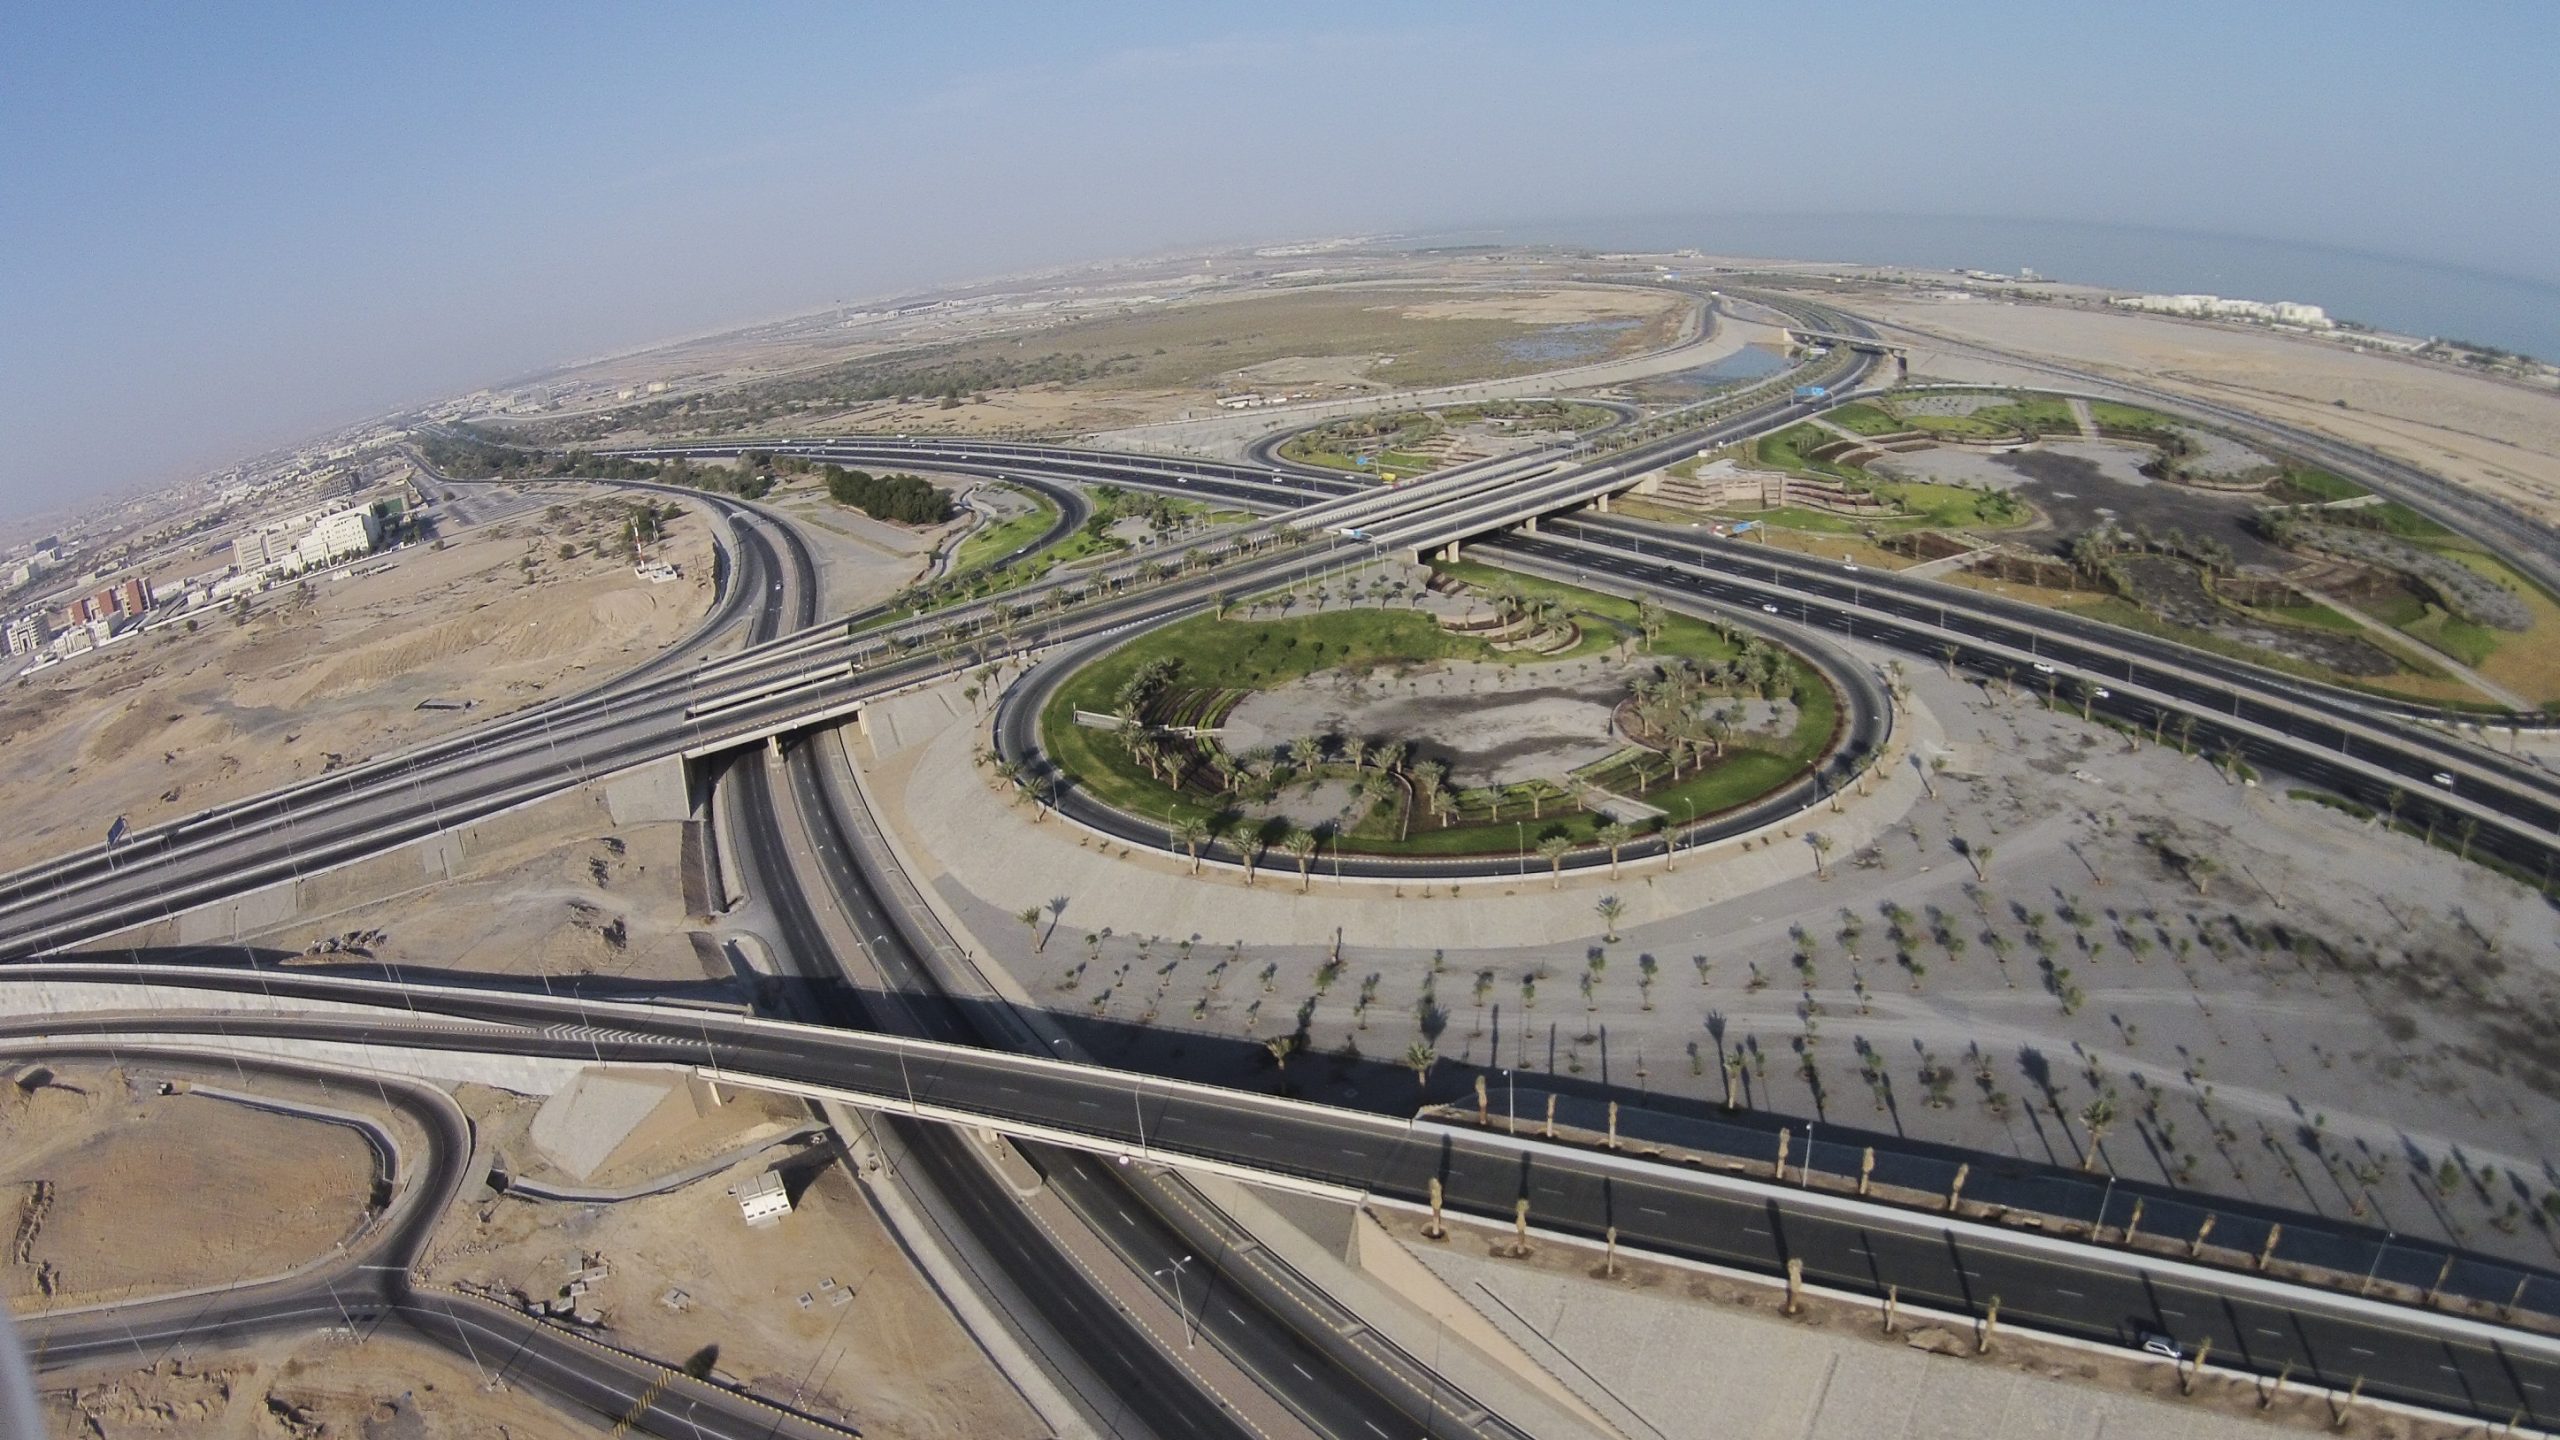 صورة كم مسافة طريق عمان الجديد بالكيلو متر